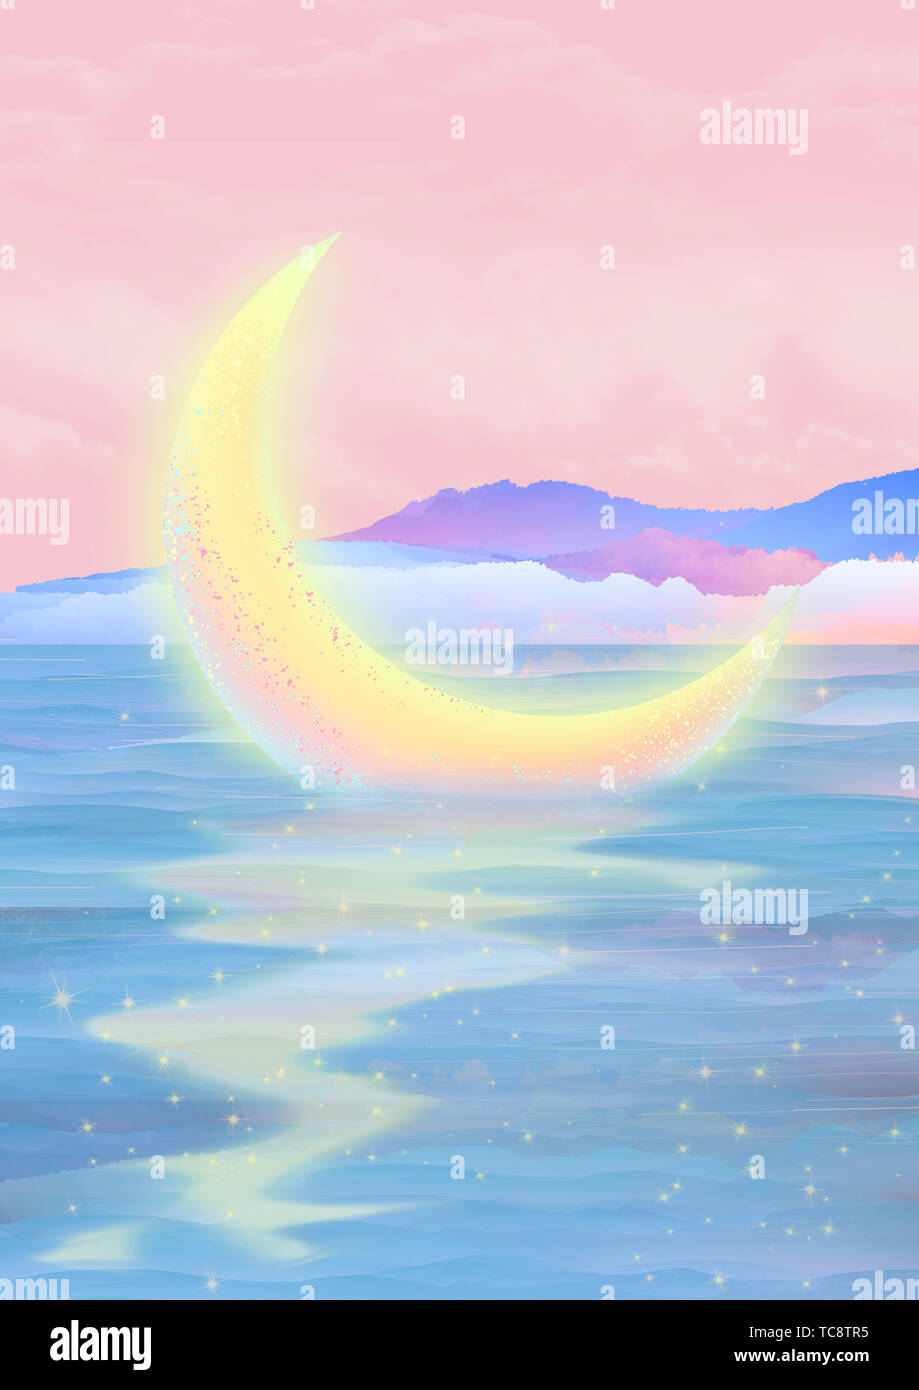 Eine Runde von leuchtenden hellen Mond ruhig liegen auf dem fließenden Fluss Wasser Hintergrund Poster Stockfoto